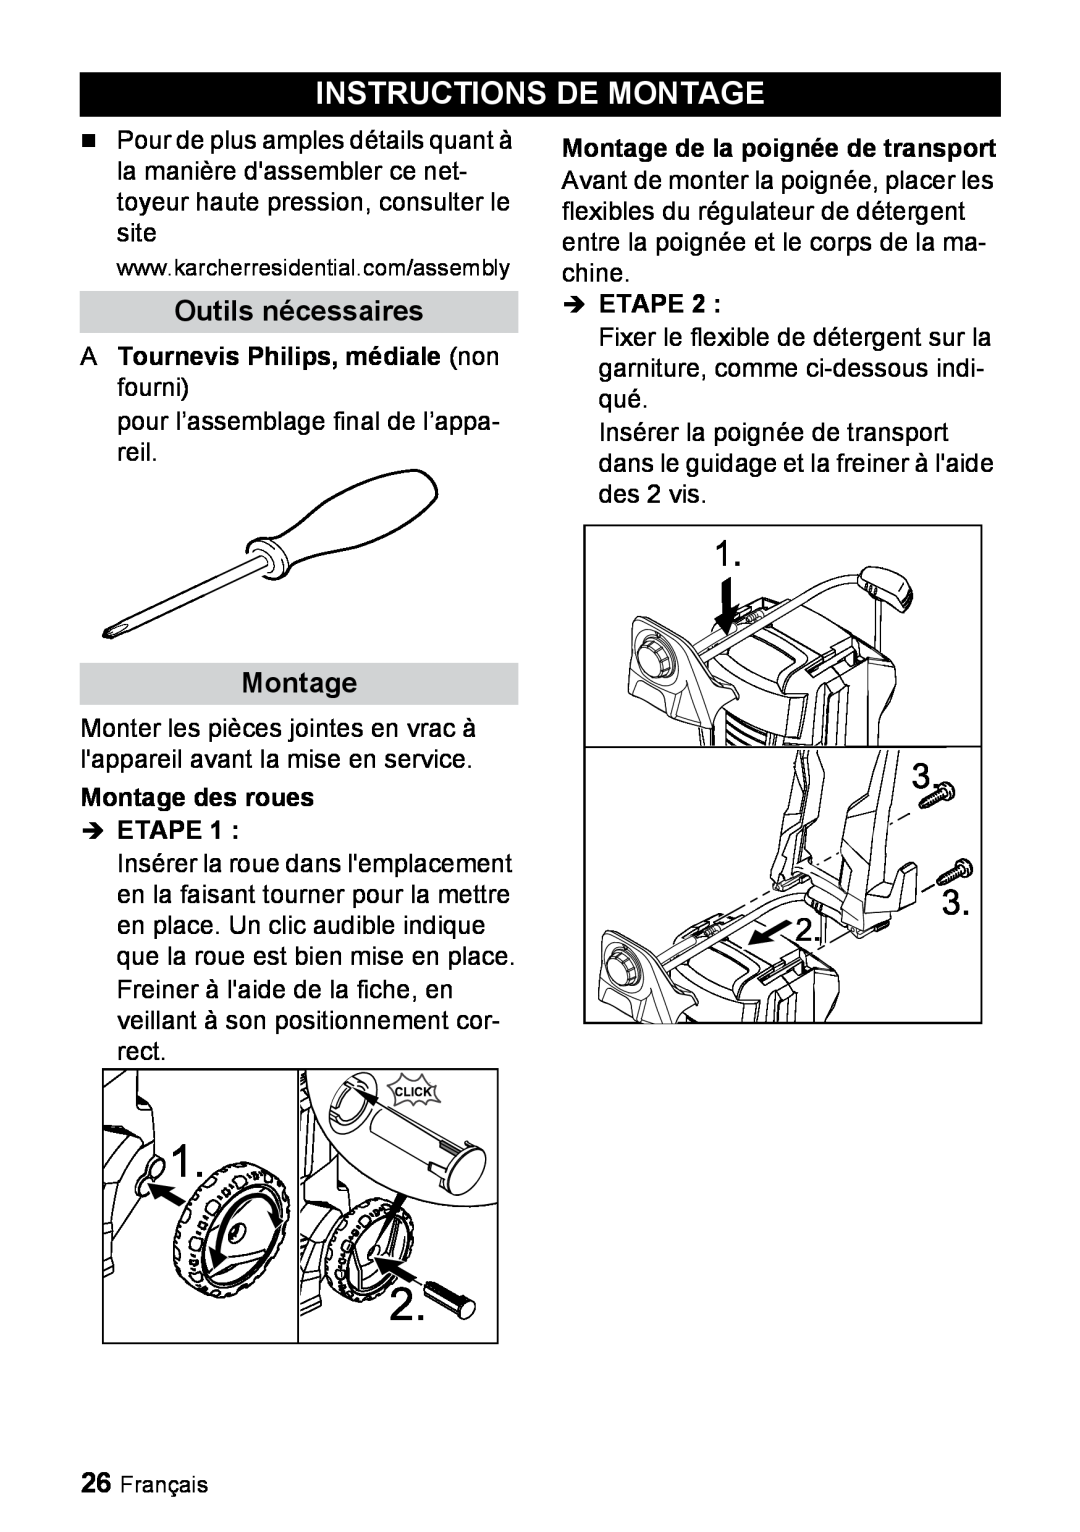 Karcher K 3.540 Instructions De Montage, Outils nécessaires, ATournevis Philips, médiale non fourni, Etape 